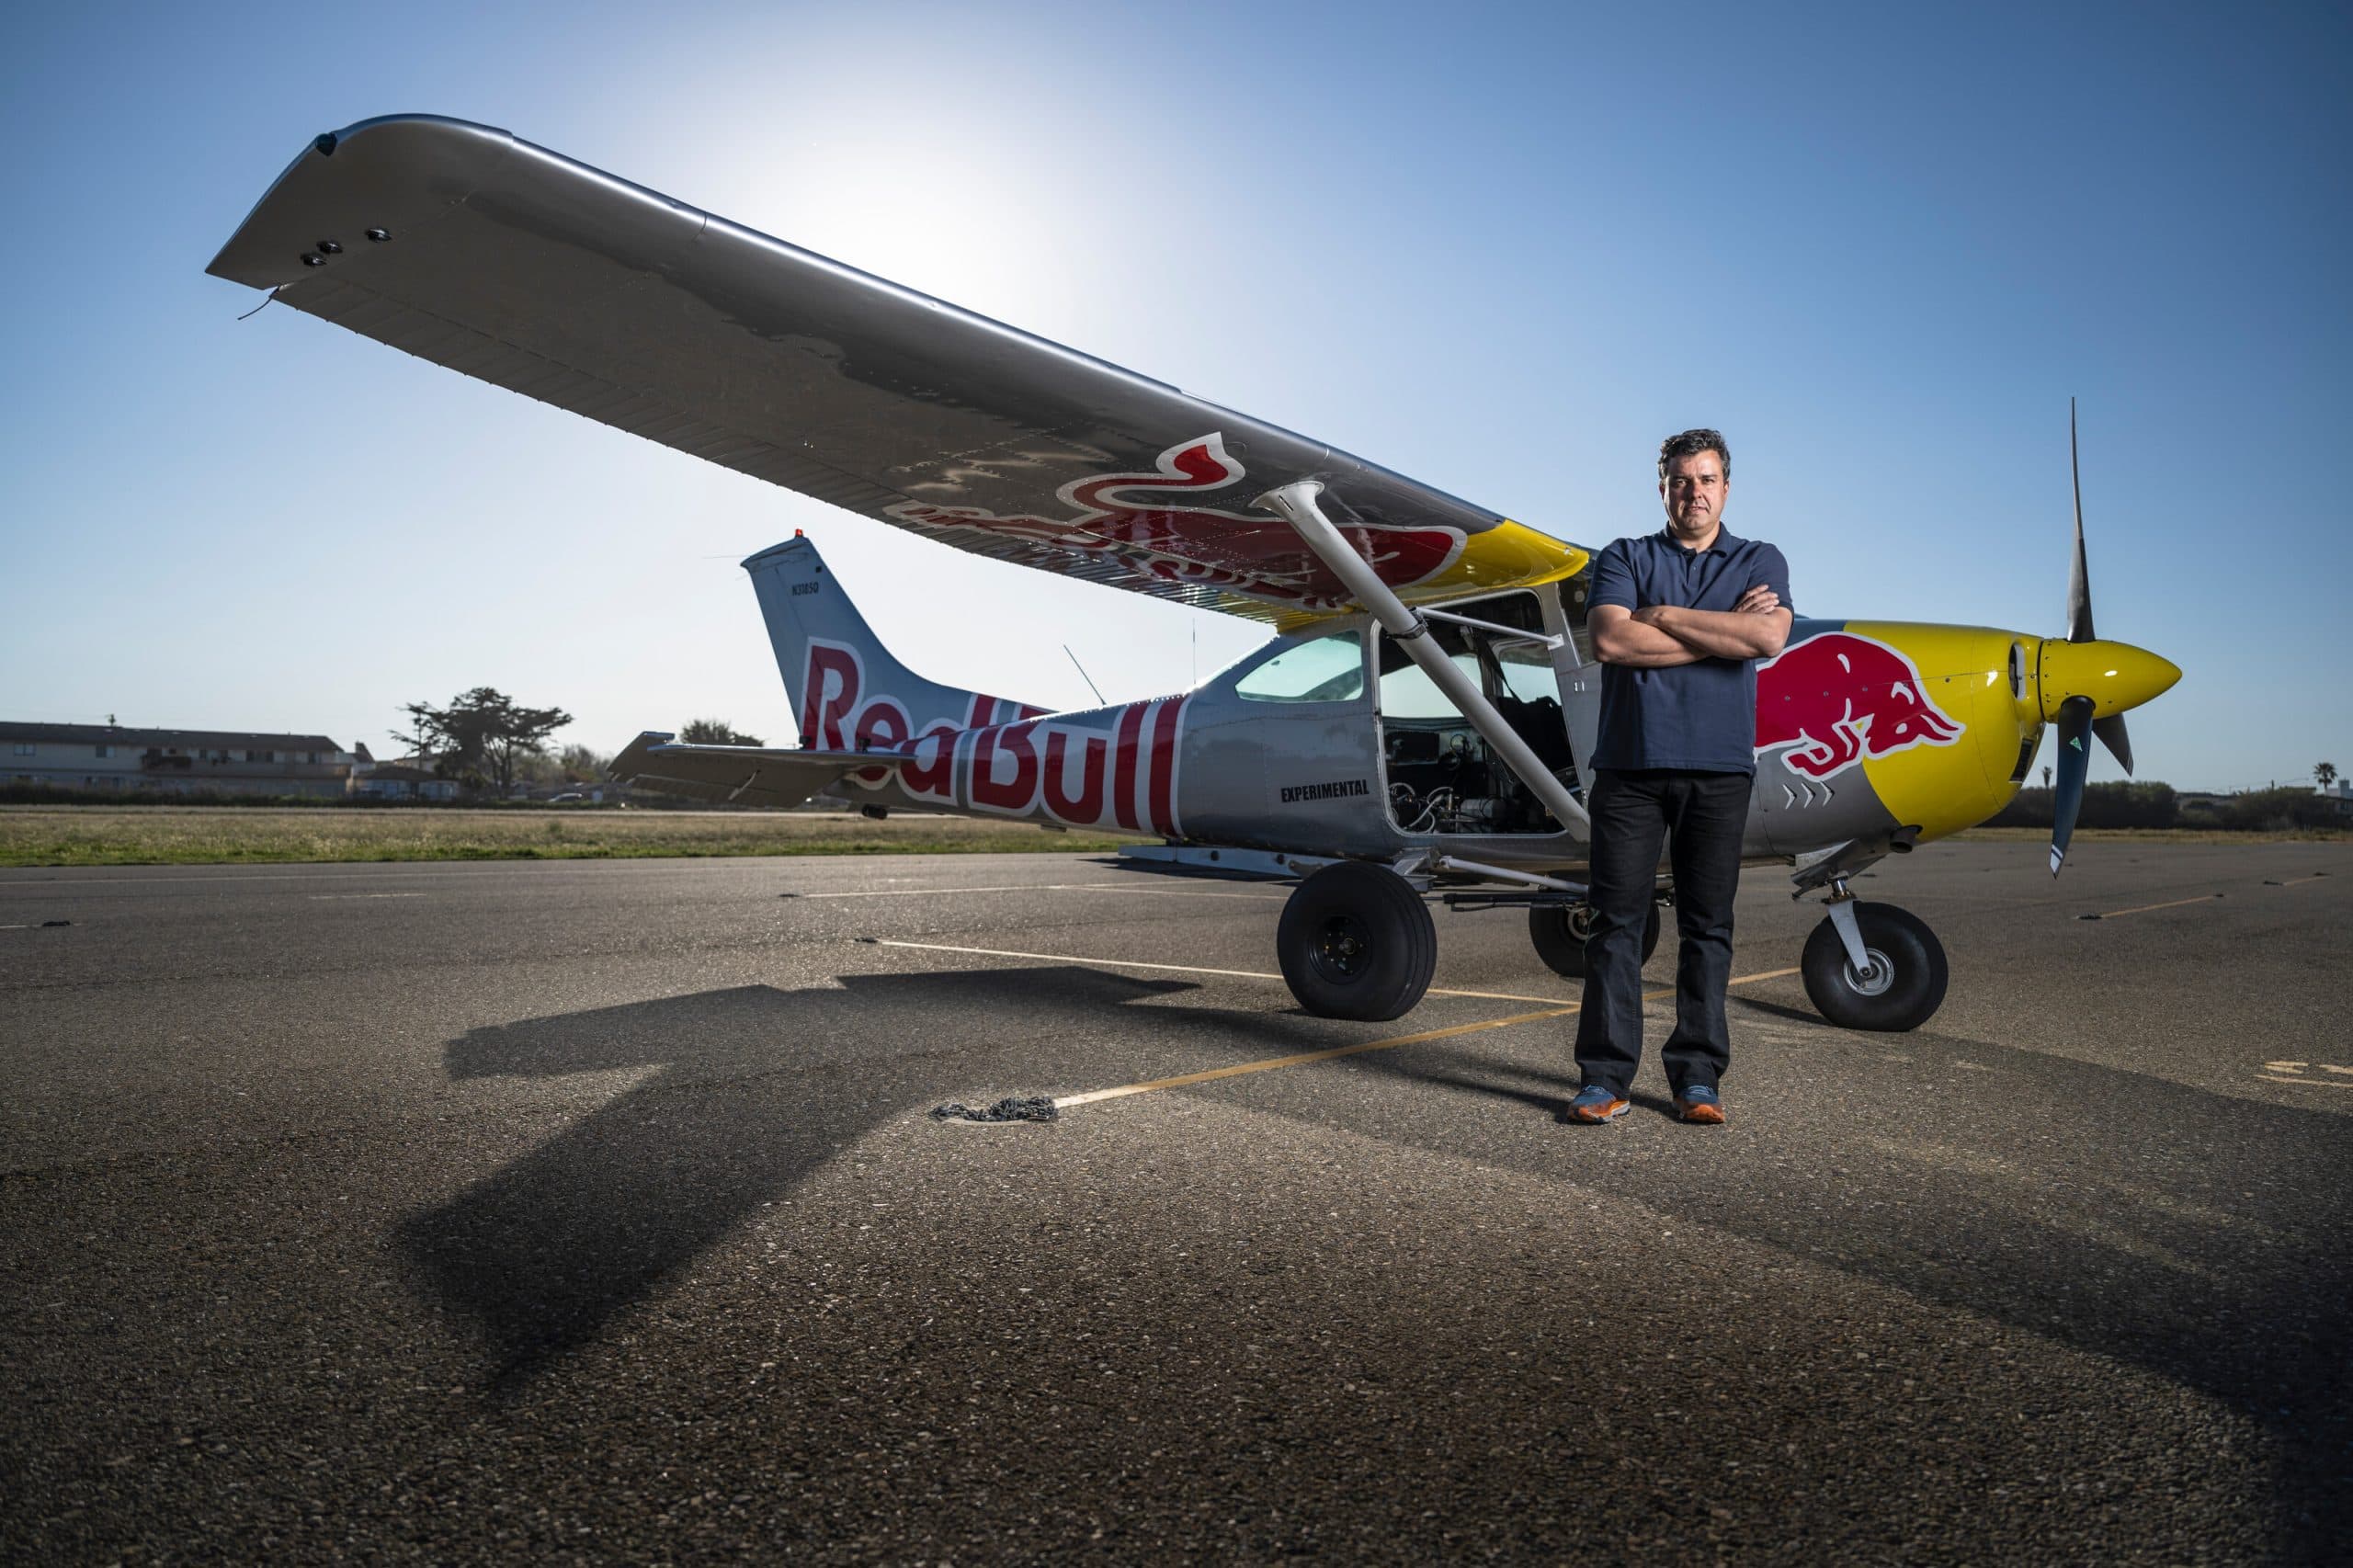 pilot Red Bullu, ktorý si vymení lietadlo vo vzduchu